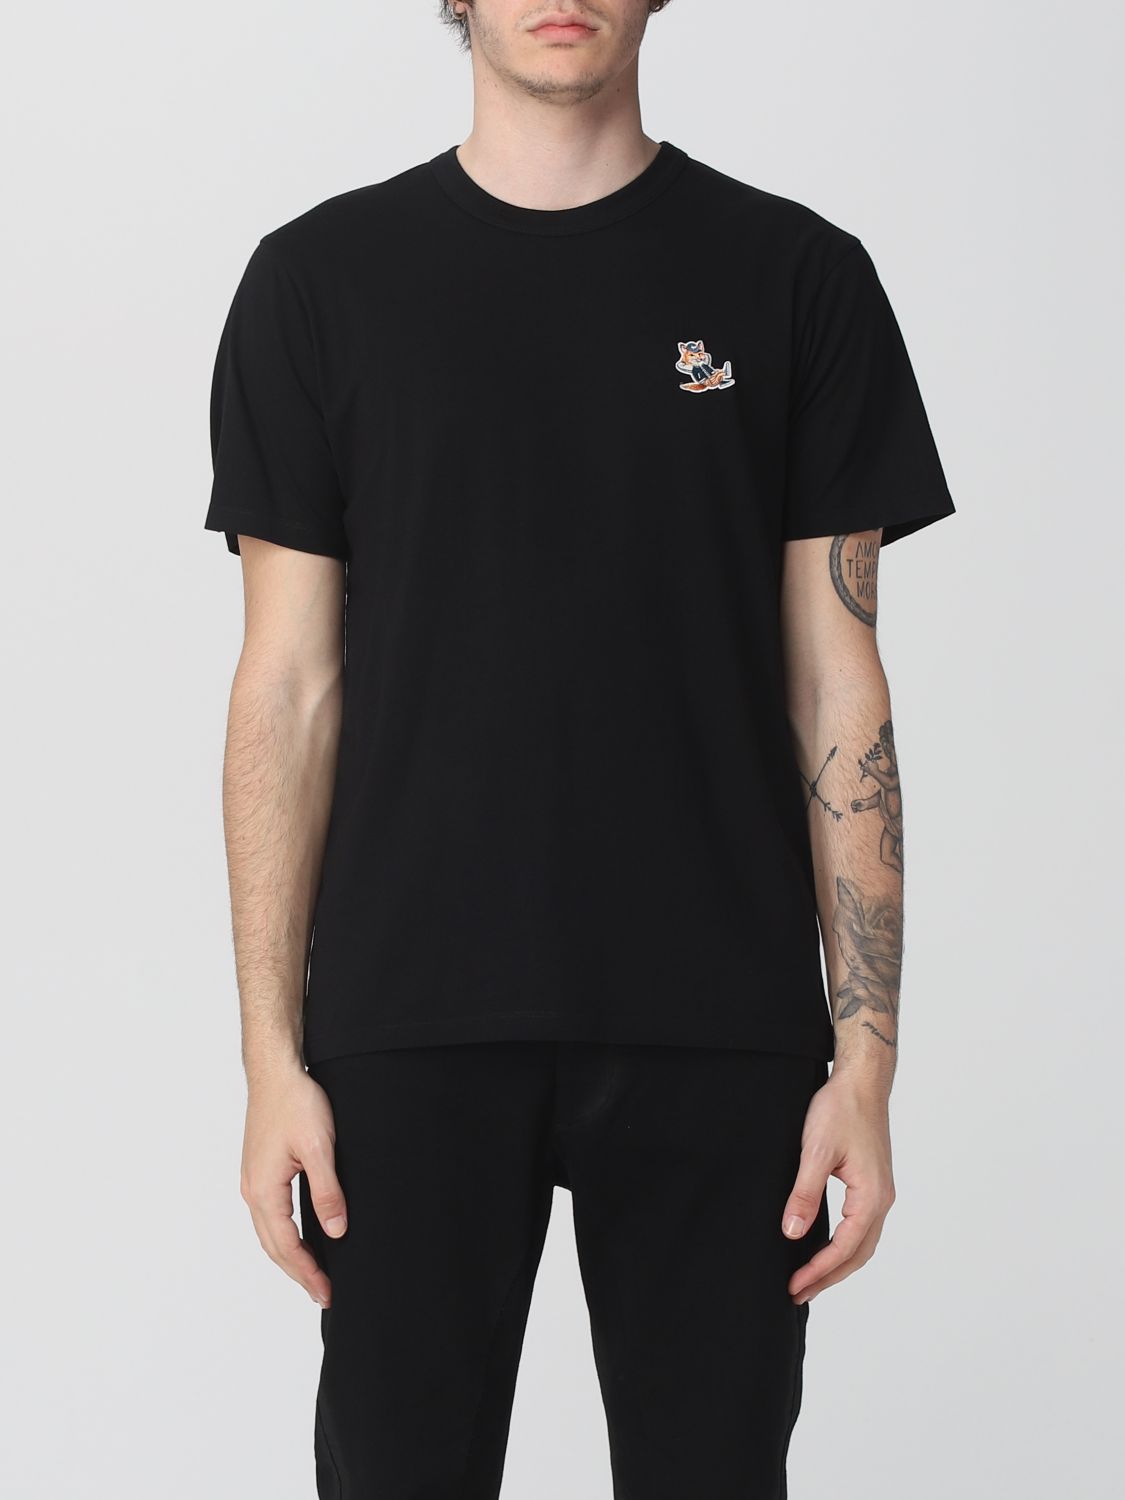 Maison KITUNE ブラック Tシャツ(Sサイズ)